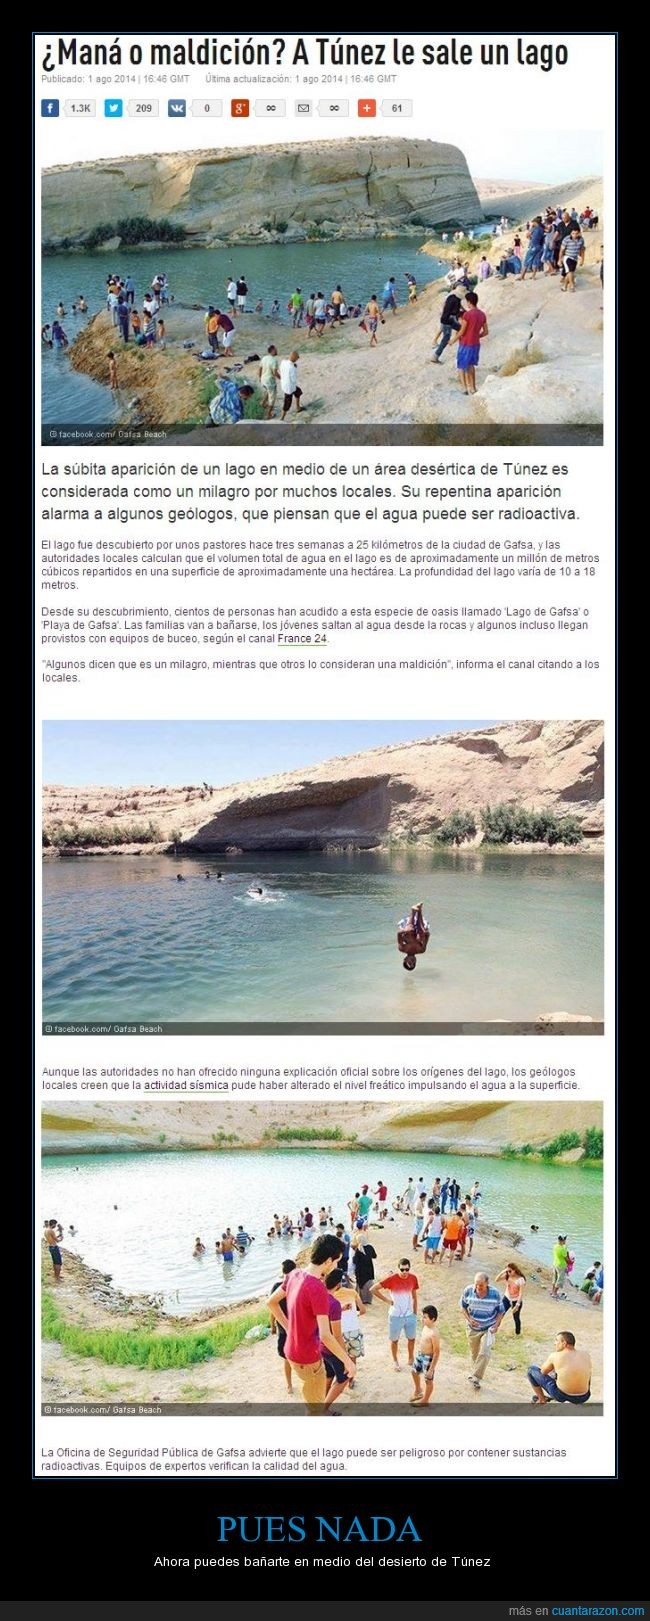 Lago,Desierto,Altamente peligroso,radioactivo,Túnez,el gobierno lo declarara privado para quedarselo,corrupcion.